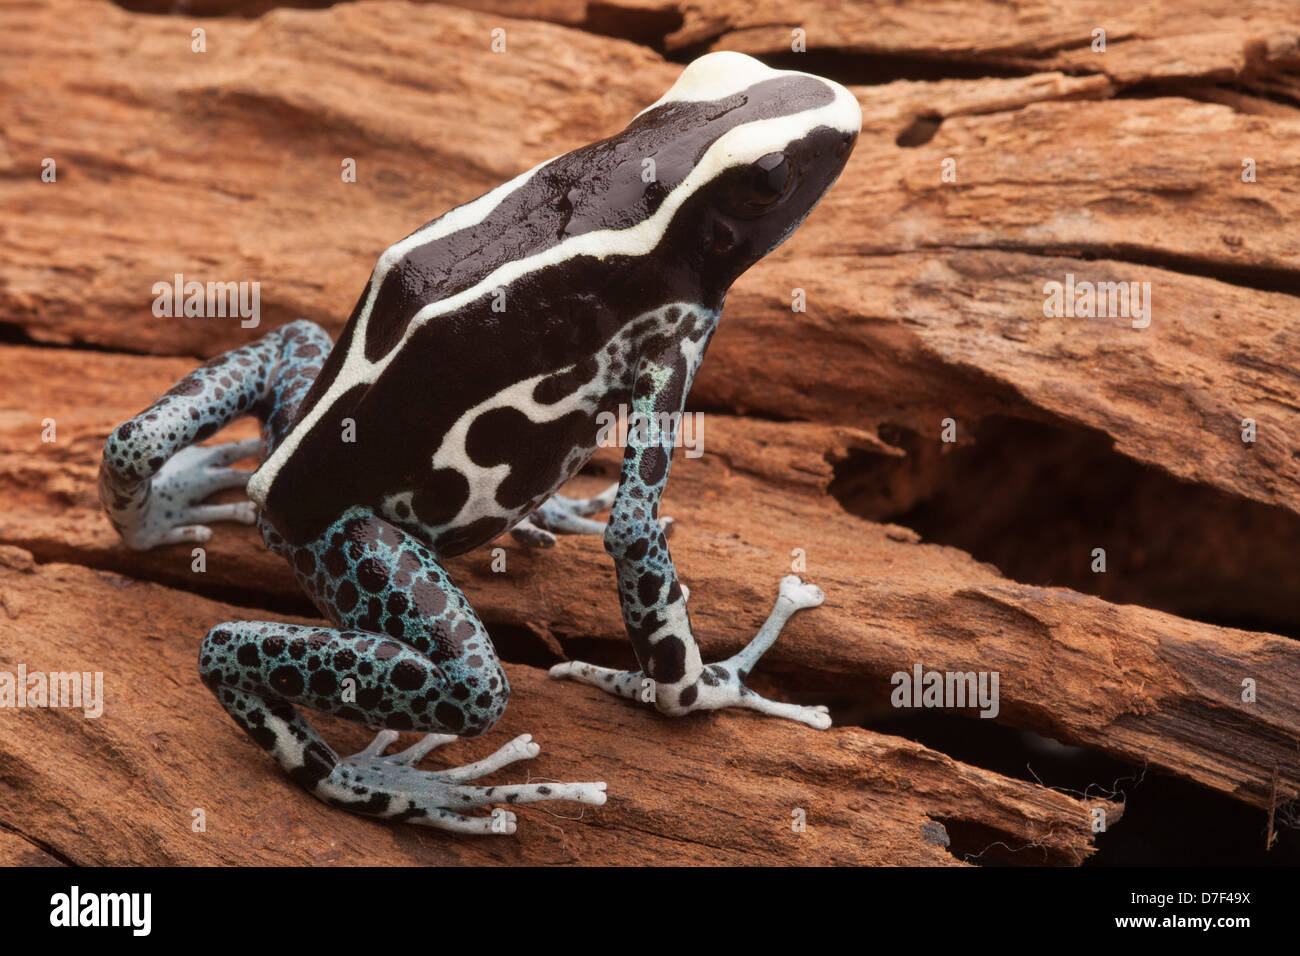 Poison dart frog, Dendrobates tinctorius A poisonous amphibian from the tropical Amazon rain forest. Stock Photo